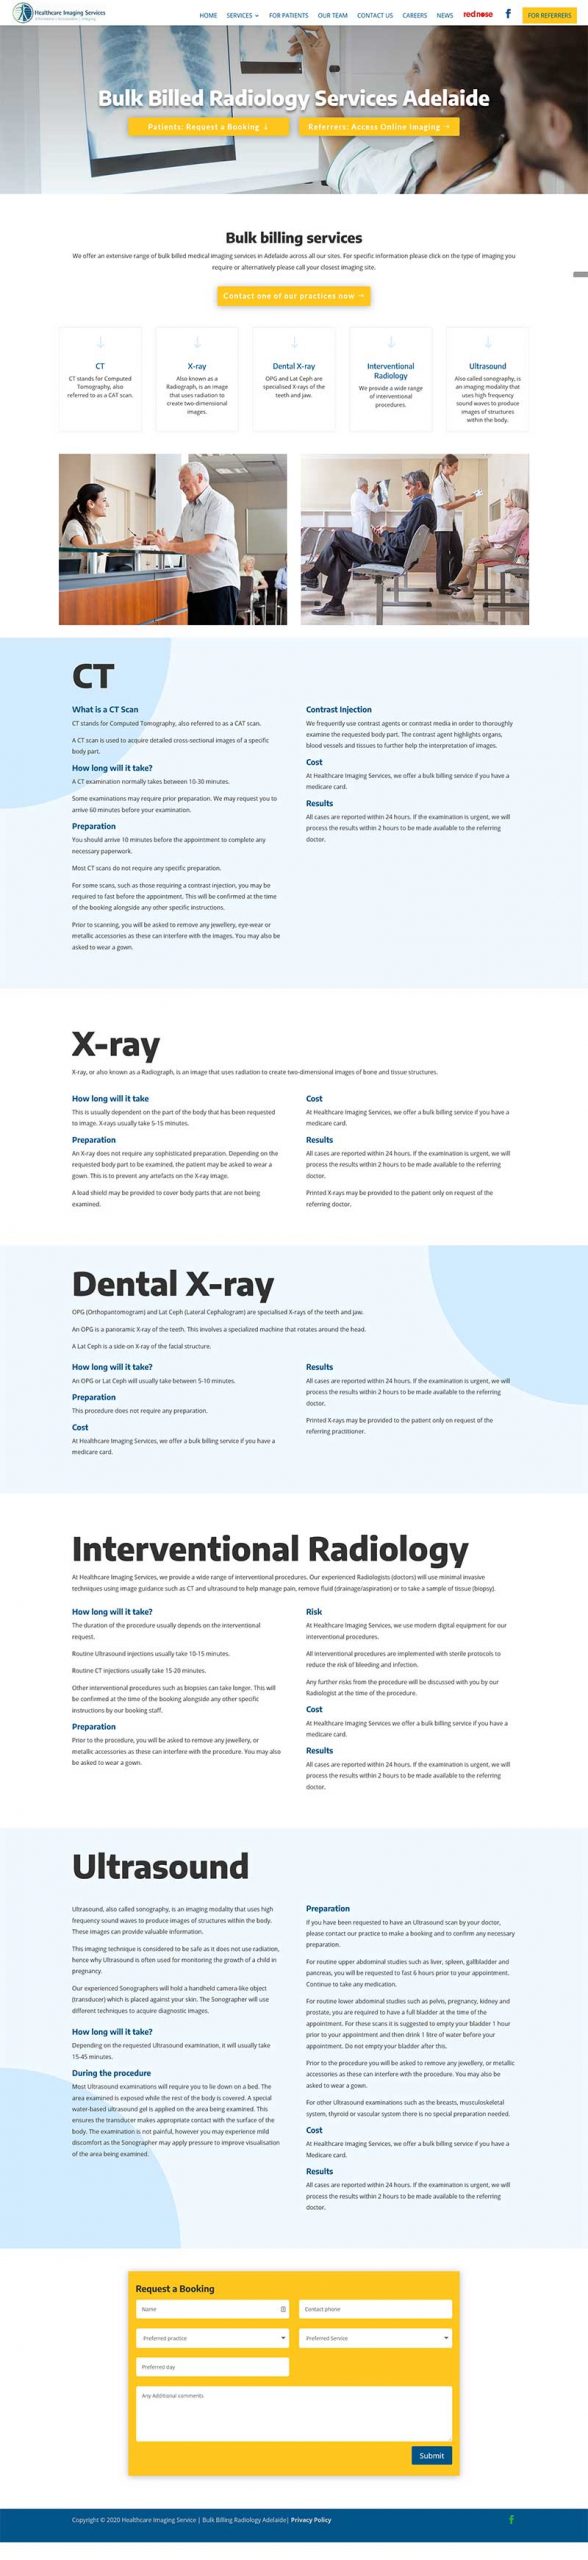 website design for adelaide radiology